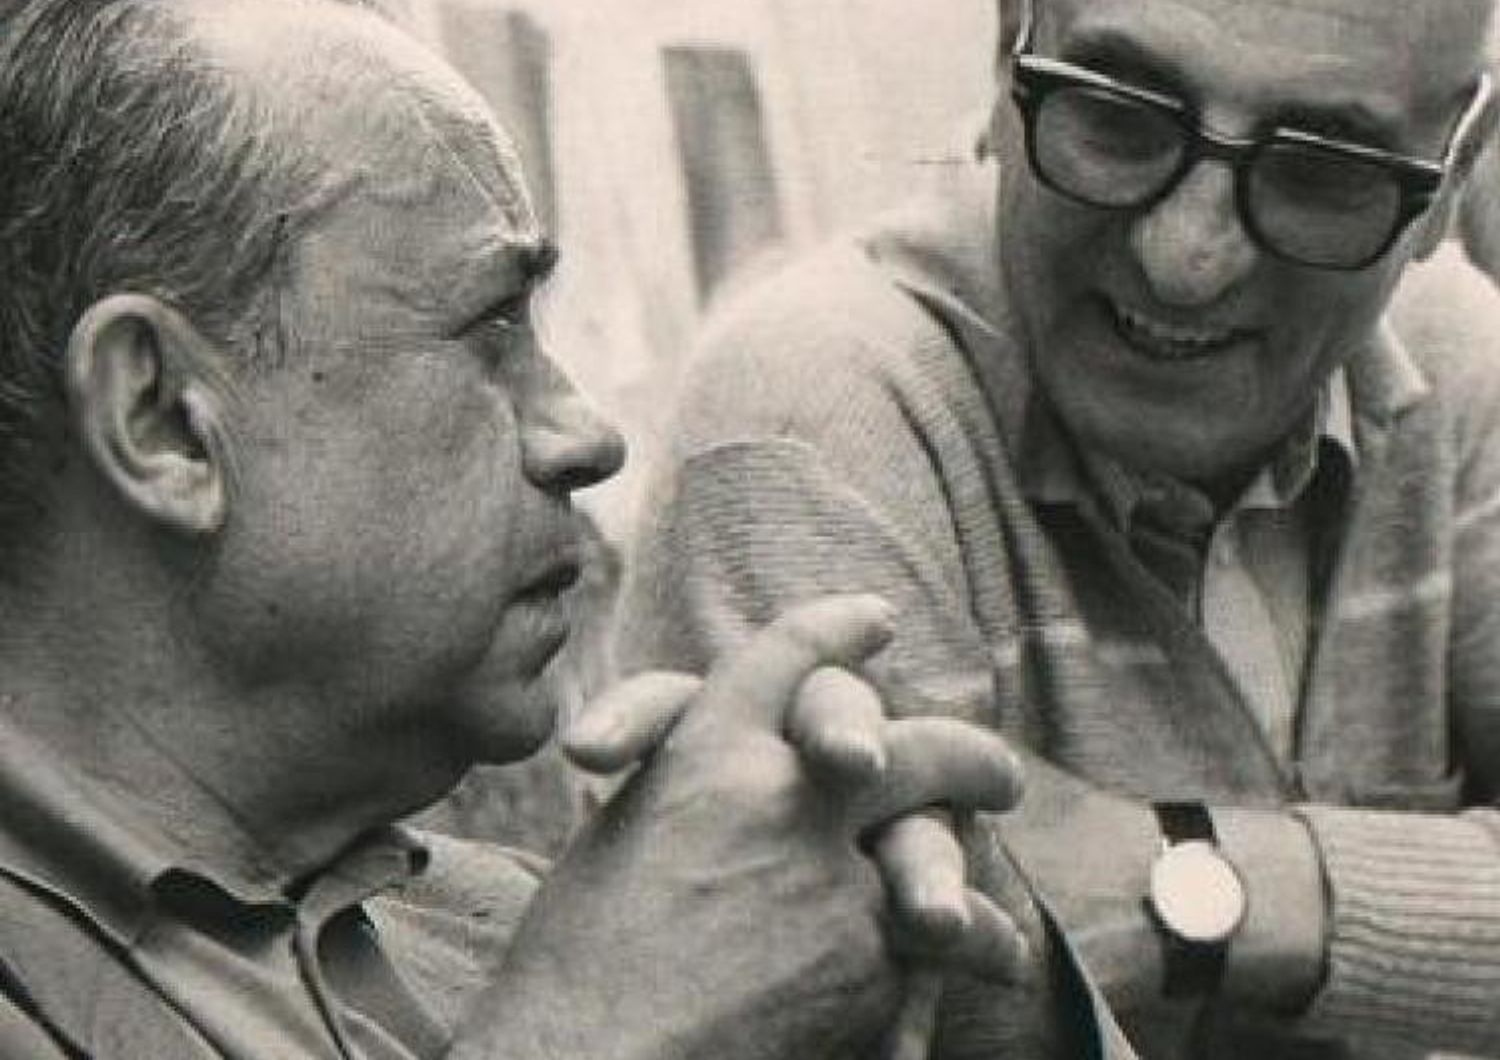 Gesualdo Bufalino con Leonardo Sciascia nel 1982